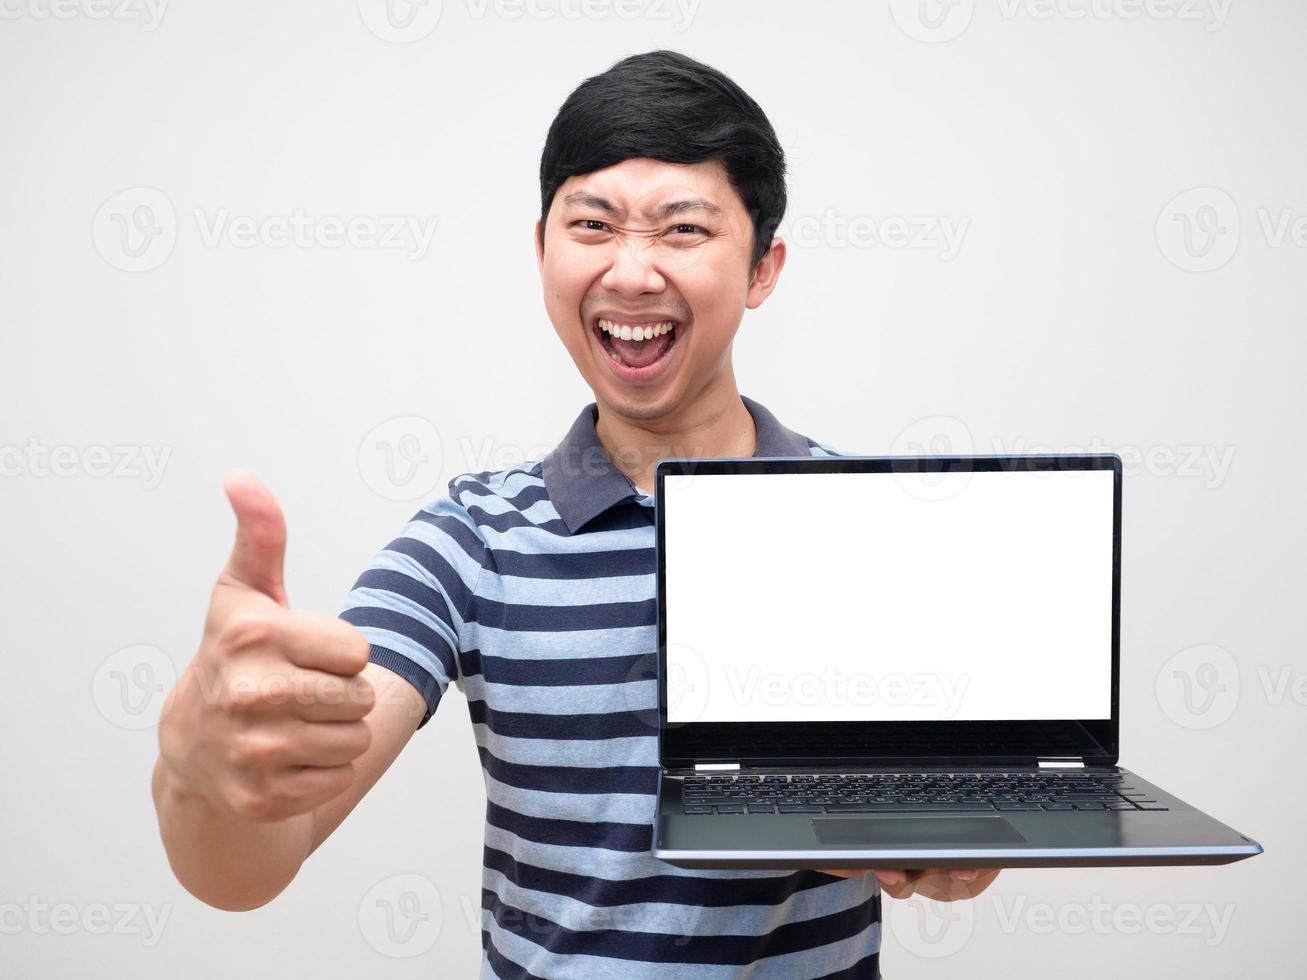 retrato hombre camisa a rayas satisfecho pulgar arriba sosteniendo laptop pantalla blanca feliz sonrisa foto